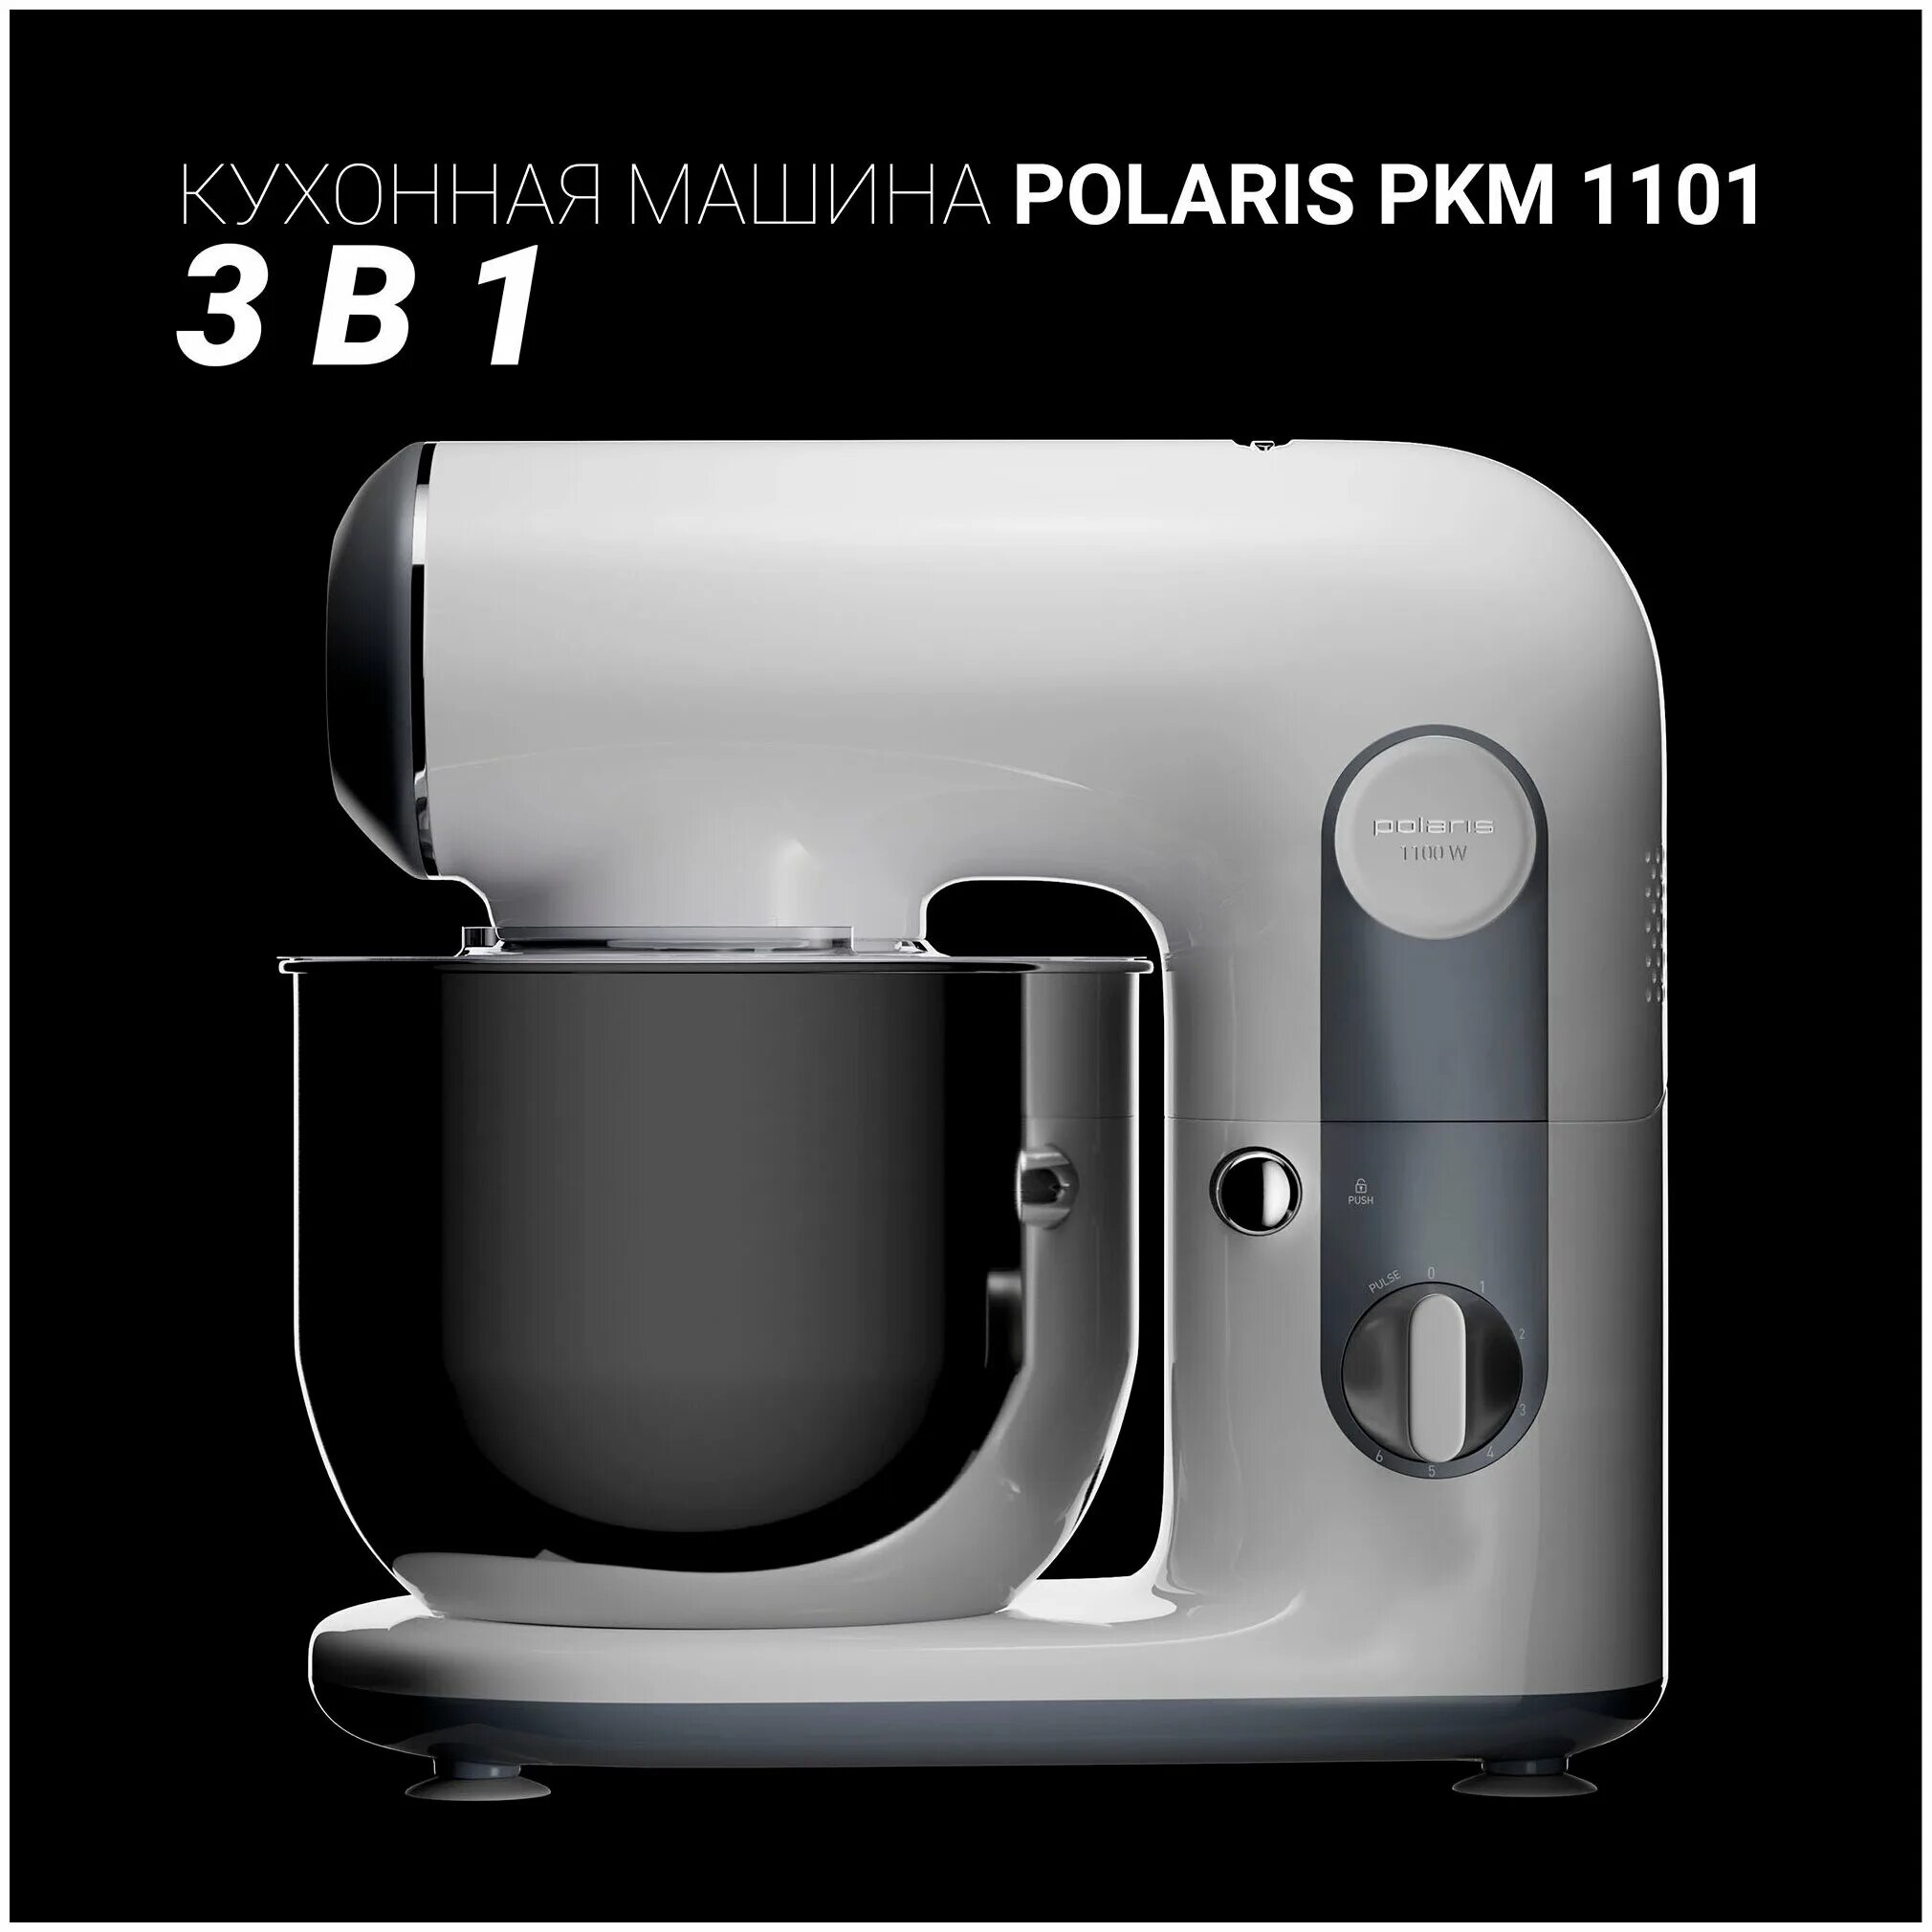 Кухонные машины поларис. Кухонная машина PKM 1101 Polaris. Миксер планетарный Polaris PKM 1101. Планетарный миксер Поларис 1101. Кухонный комбайн Поларис 5 в 1.